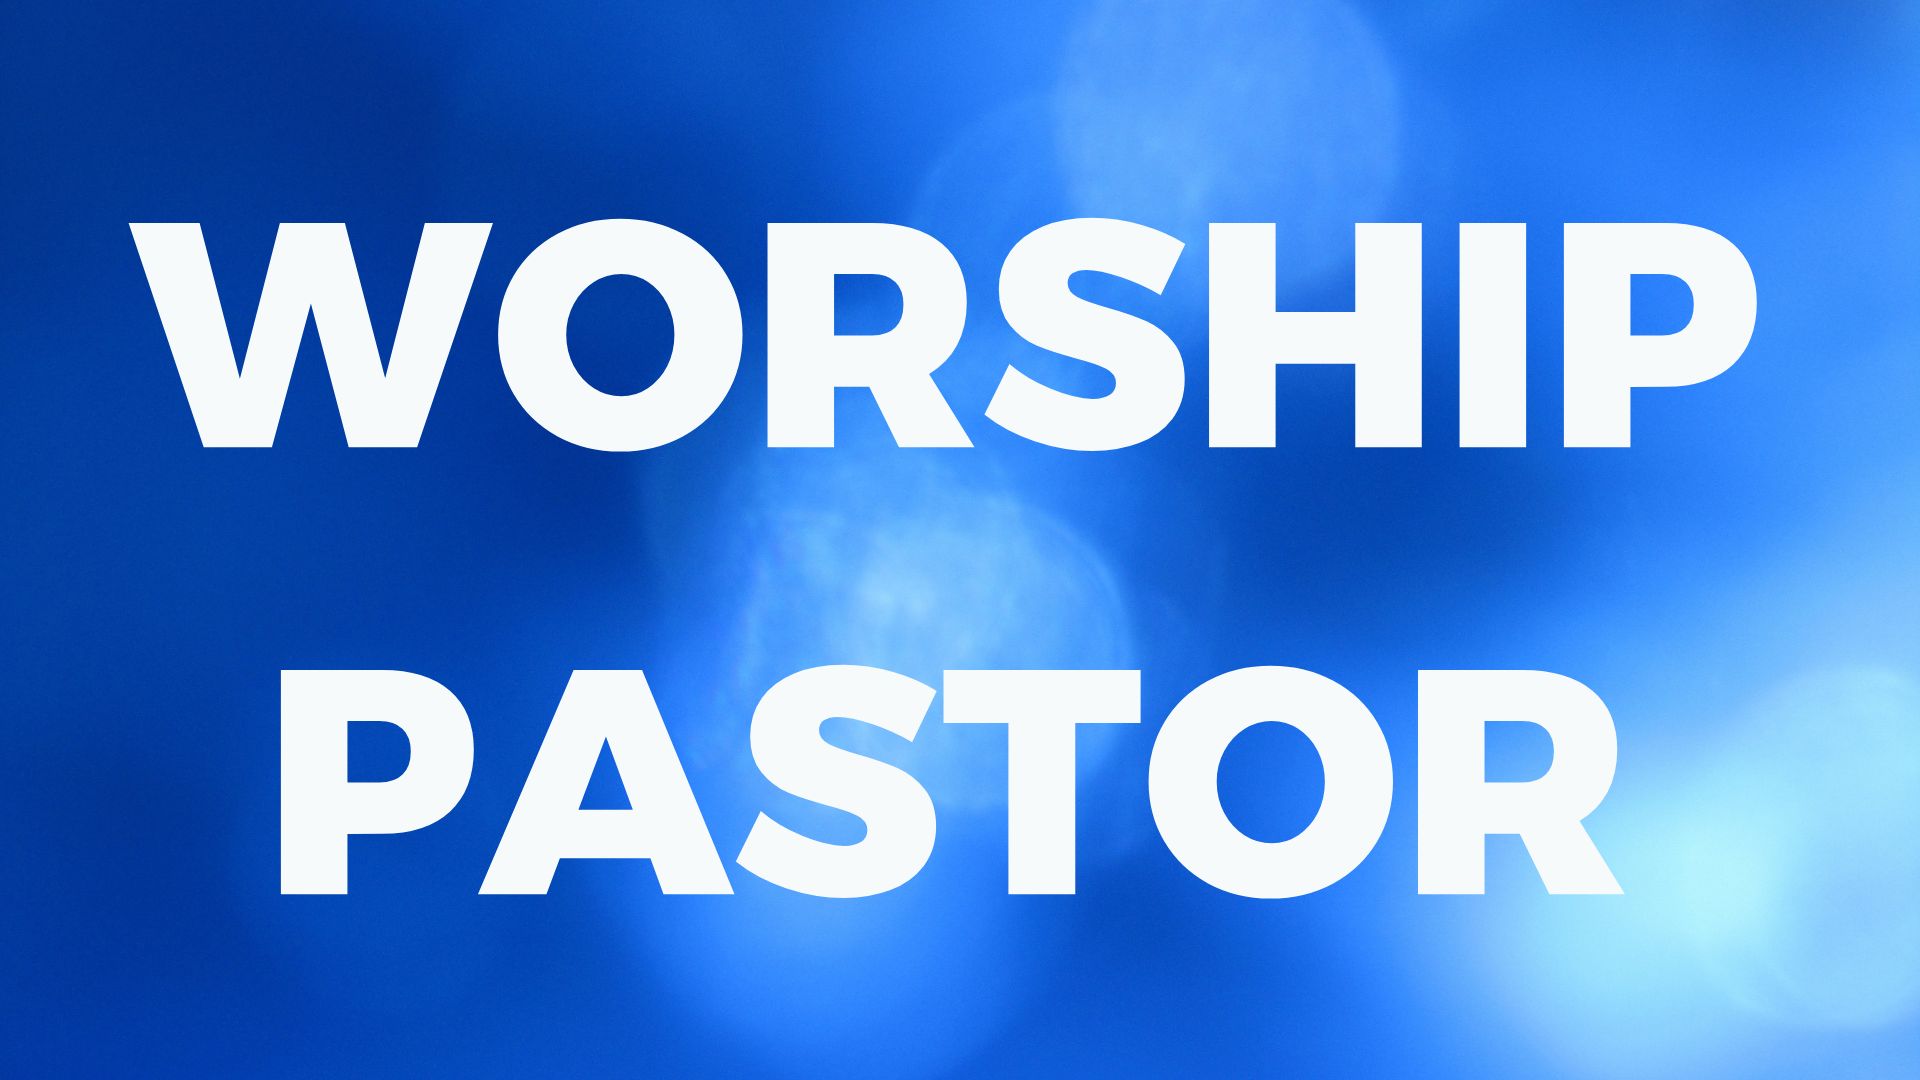 Worship Pastor